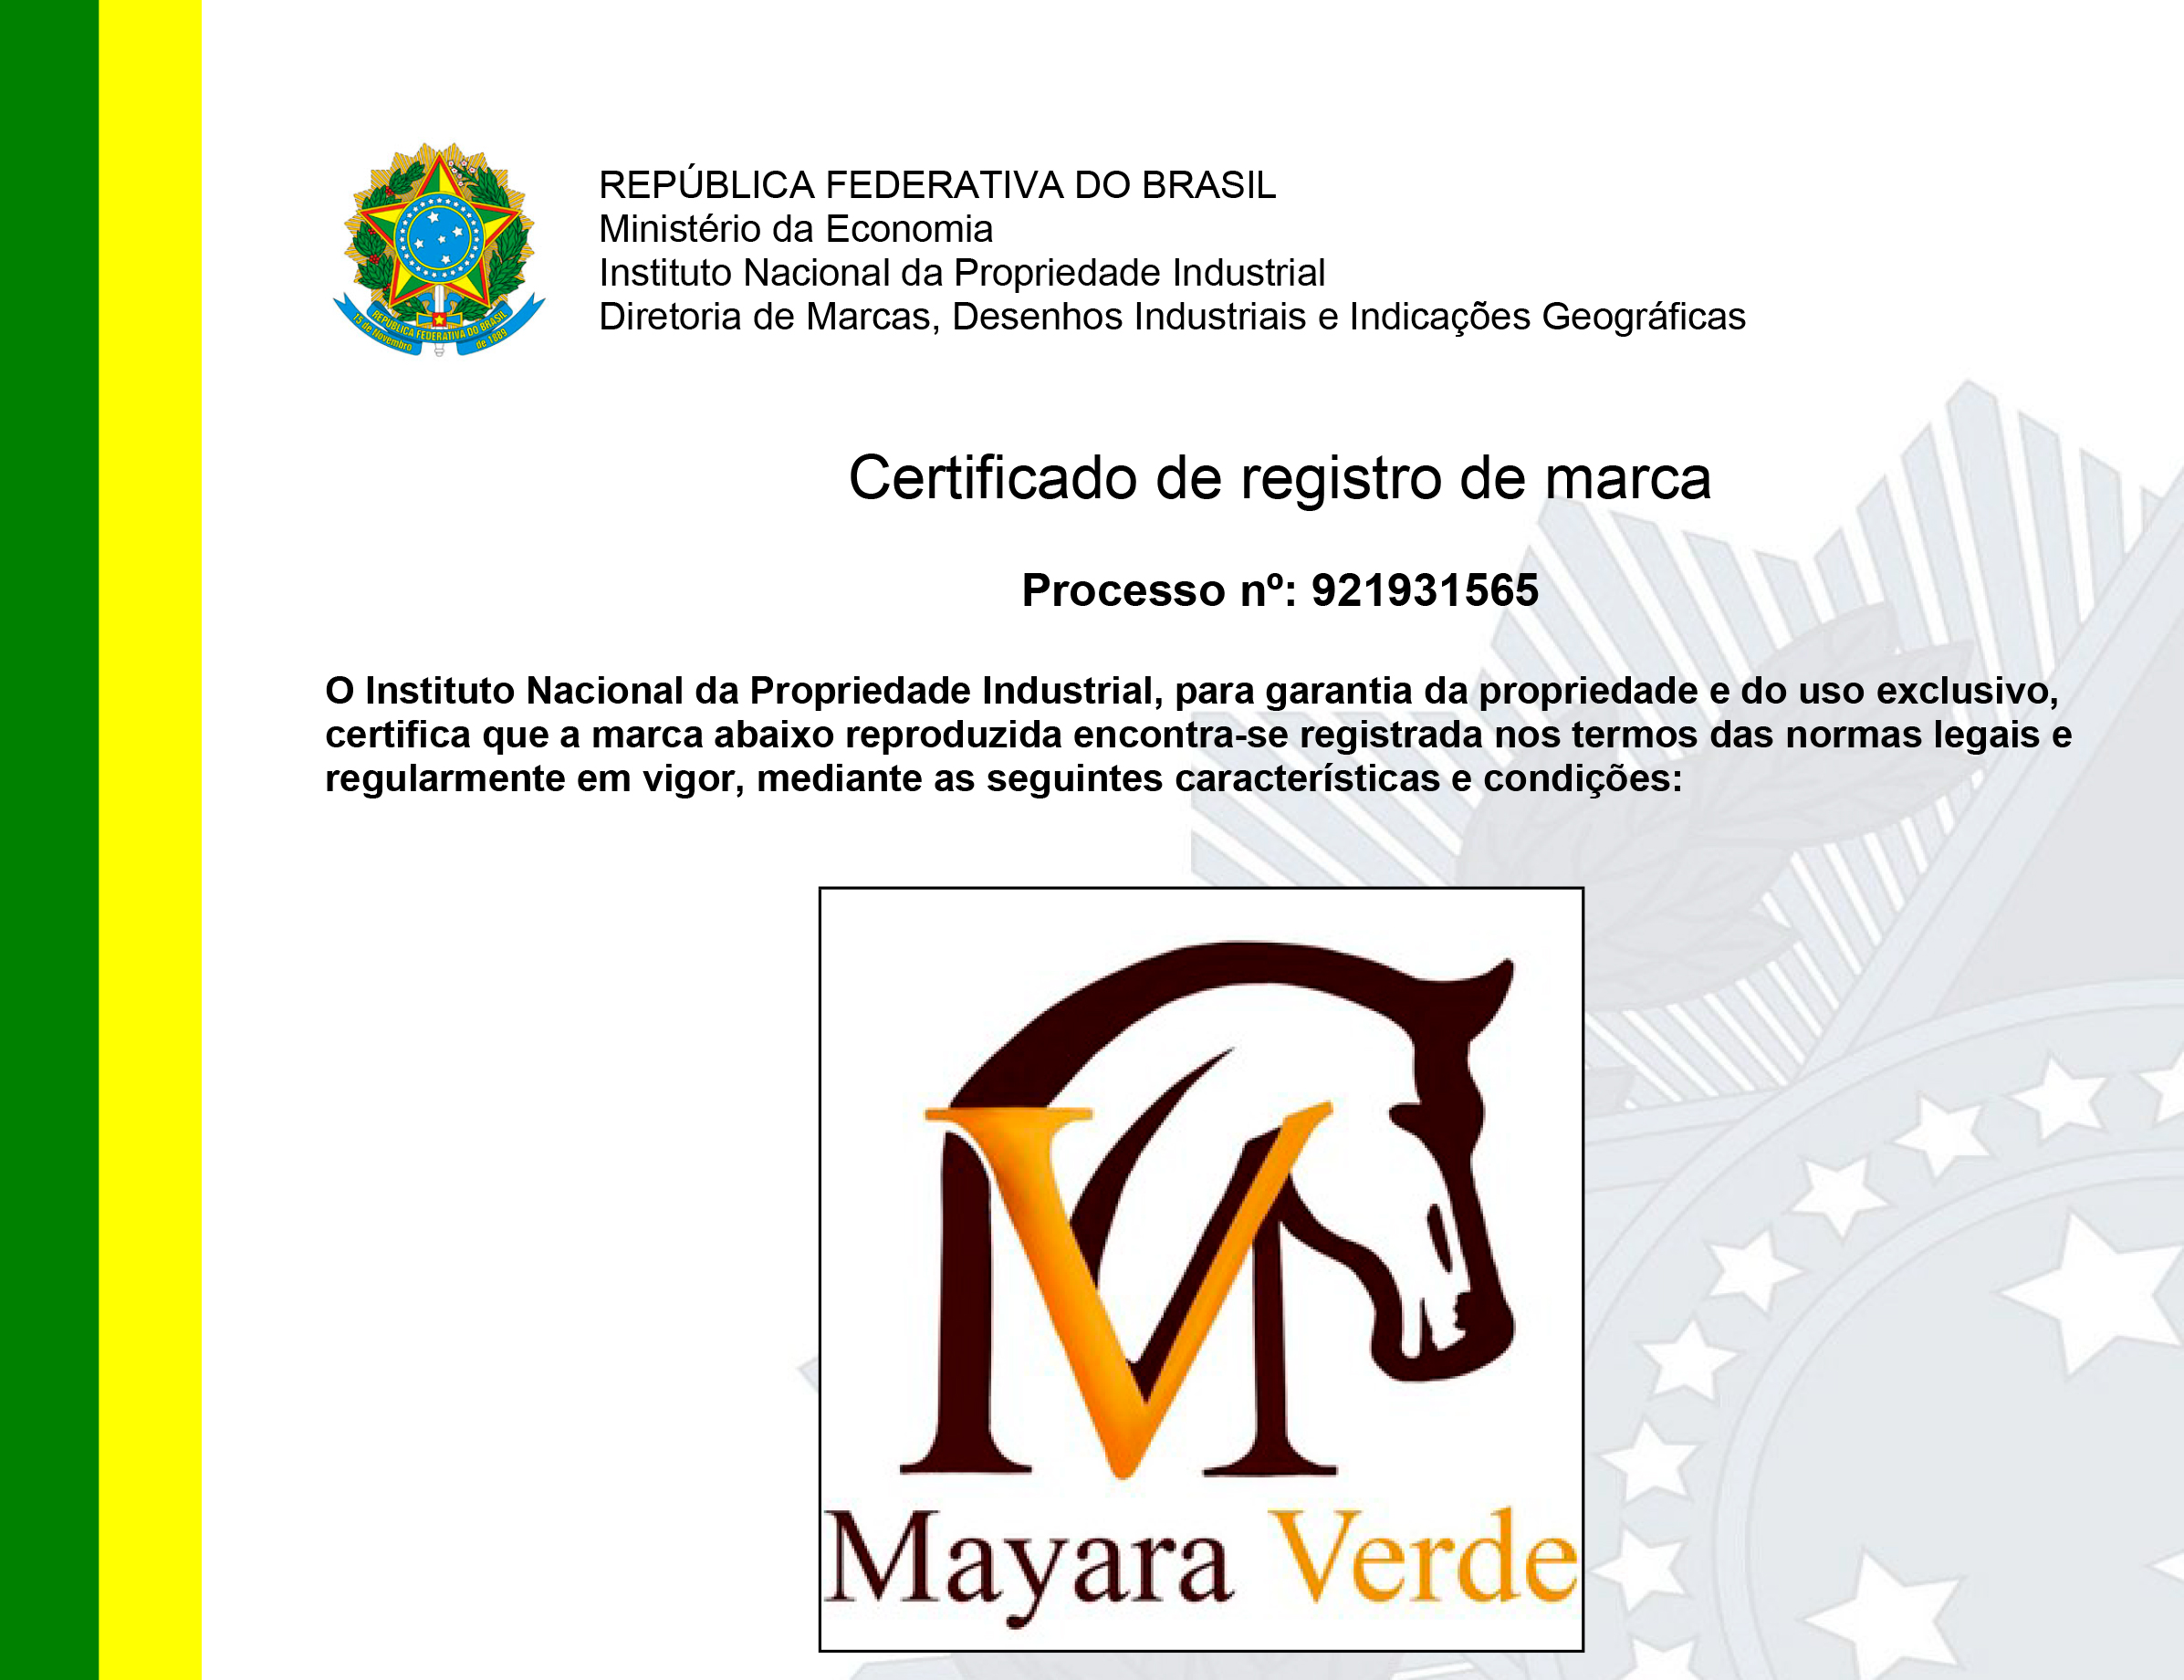 CERTIFICADO-DE-REG-MAYARA-VERDE-CL-25-PED-921931565-1